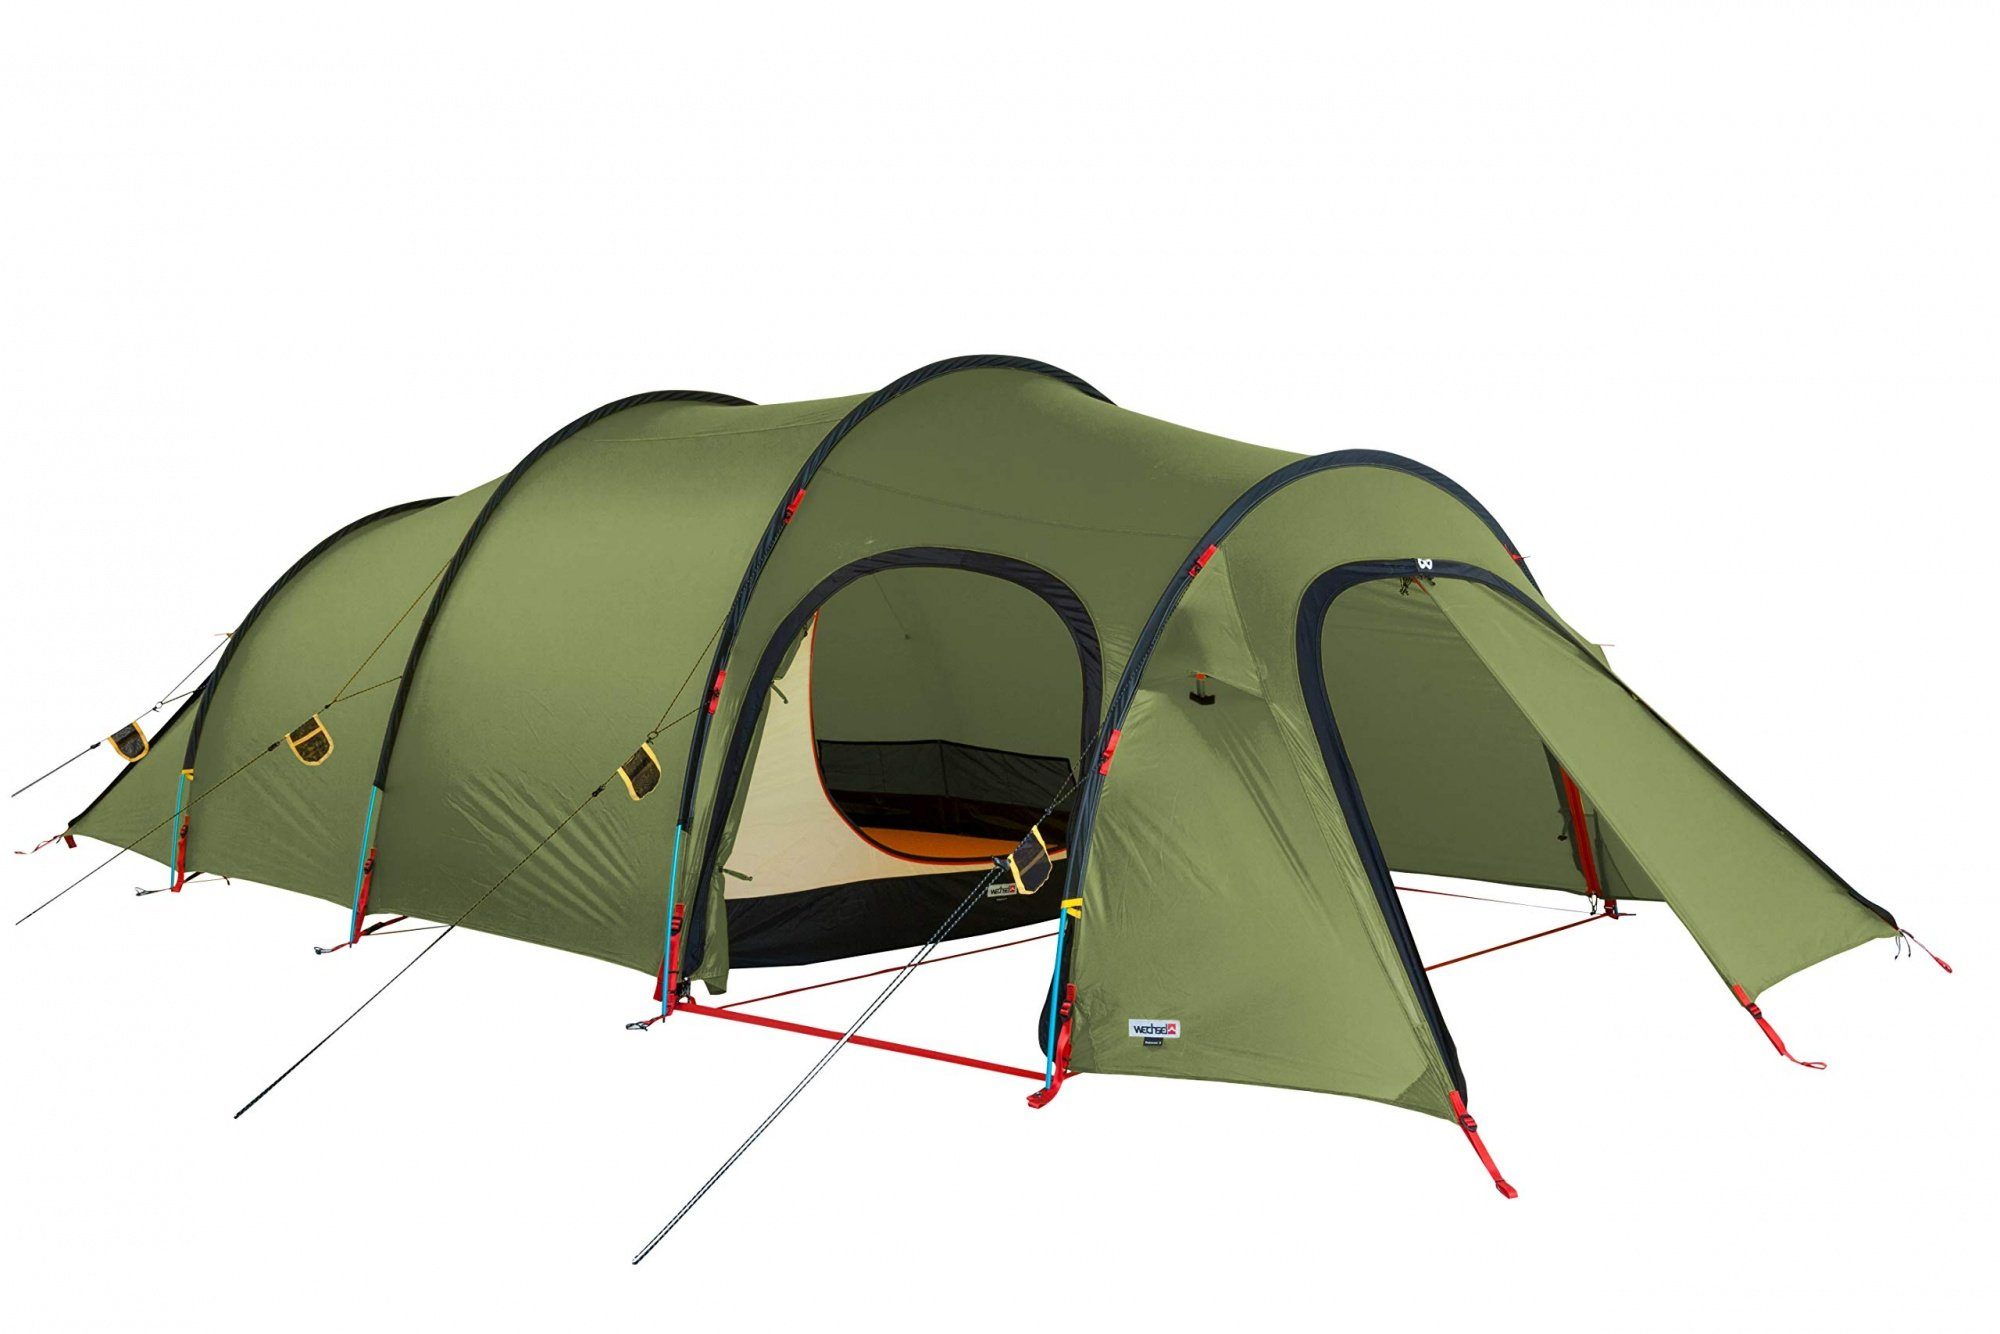 Wechsel Tents Biwakzelt Endeavour 4 Personen Expeditionszelt - 4  Jahreszeiten - Grün, Personen: 4